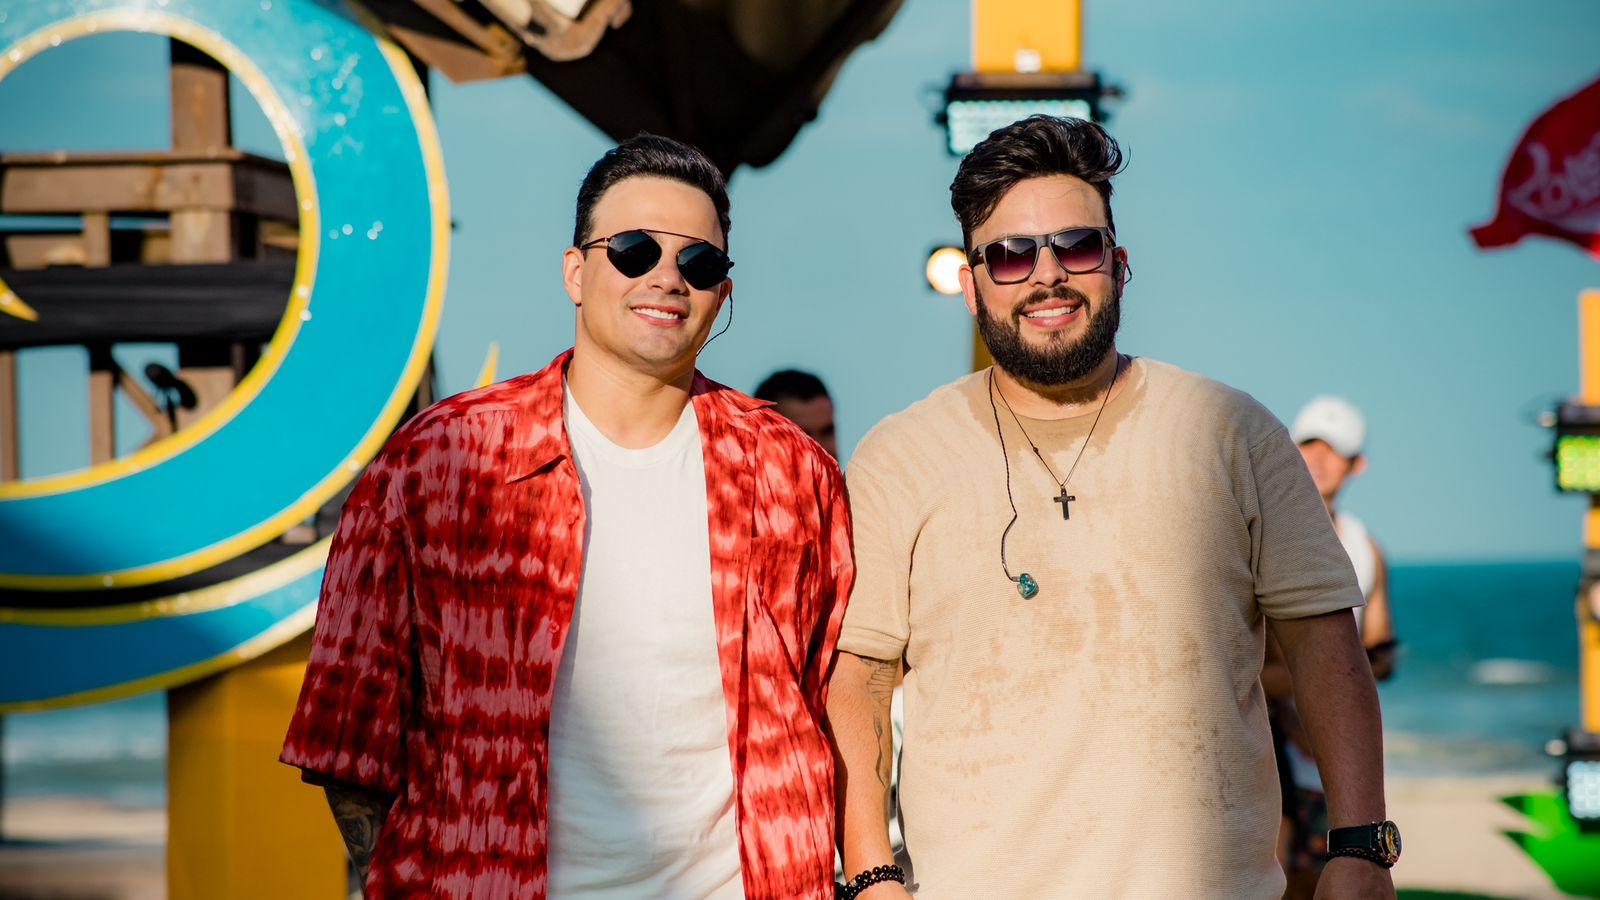 PRIMEIRO LUGAR: Gustavo Moura & Rafael atingem o topo do Spotify Brasil com "Digitando"